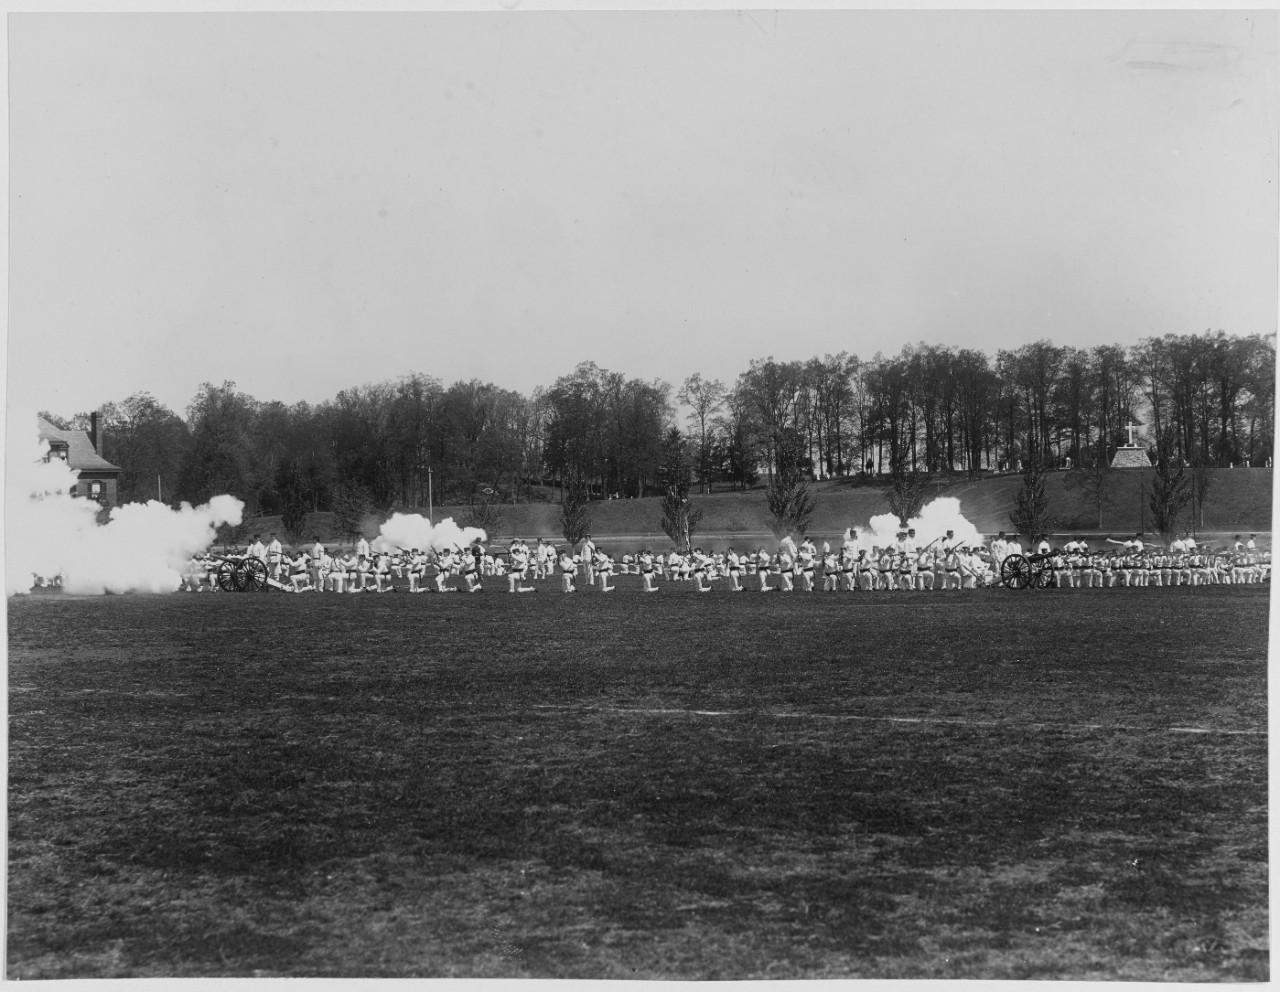 Sham battle, class of 1903